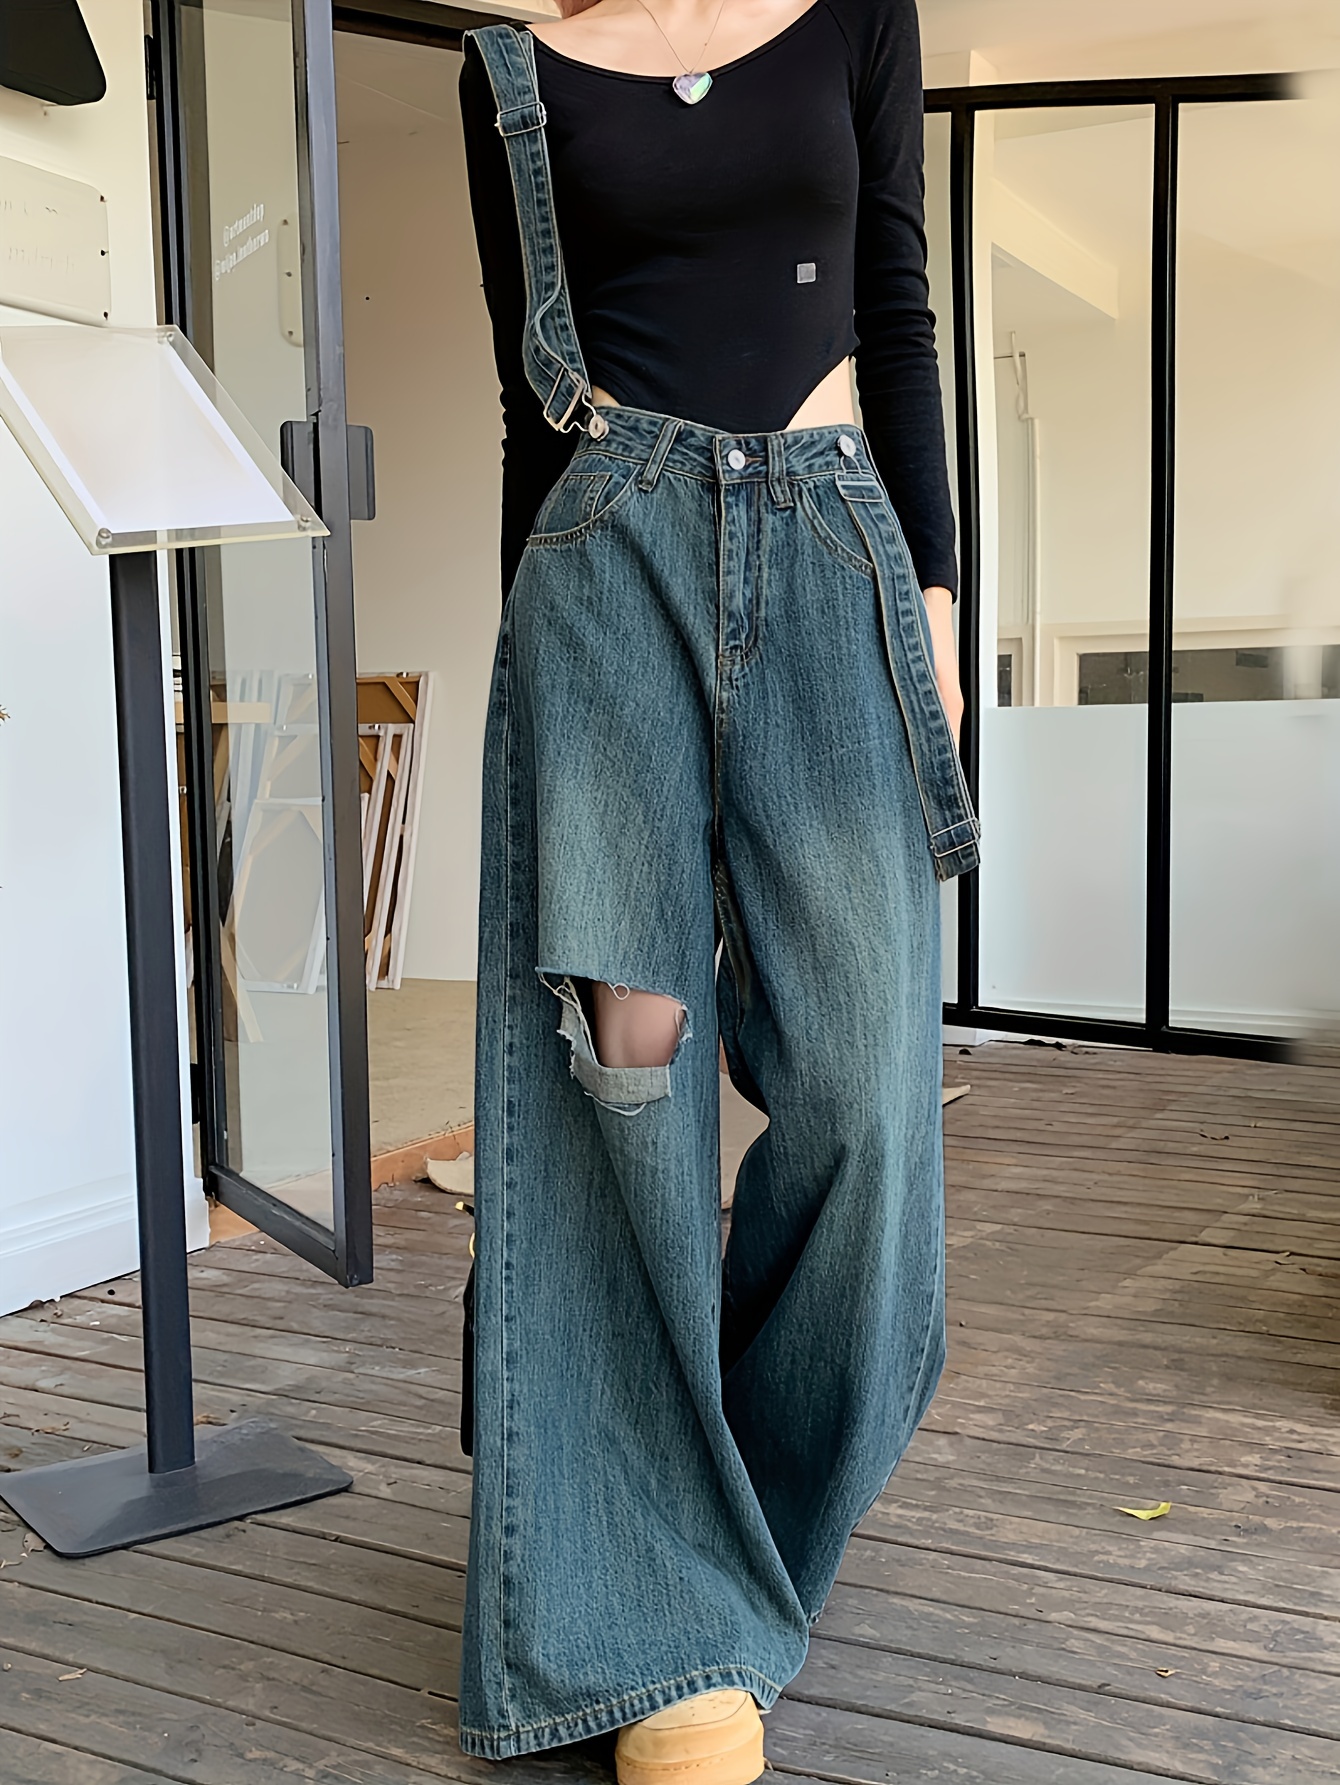 Pantalones de mezclilla de cintura alta para mujer, ajustados, elásticos,  ajustados, con borlas, cinturón, vendaje, pantalones de mezclilla ajustados